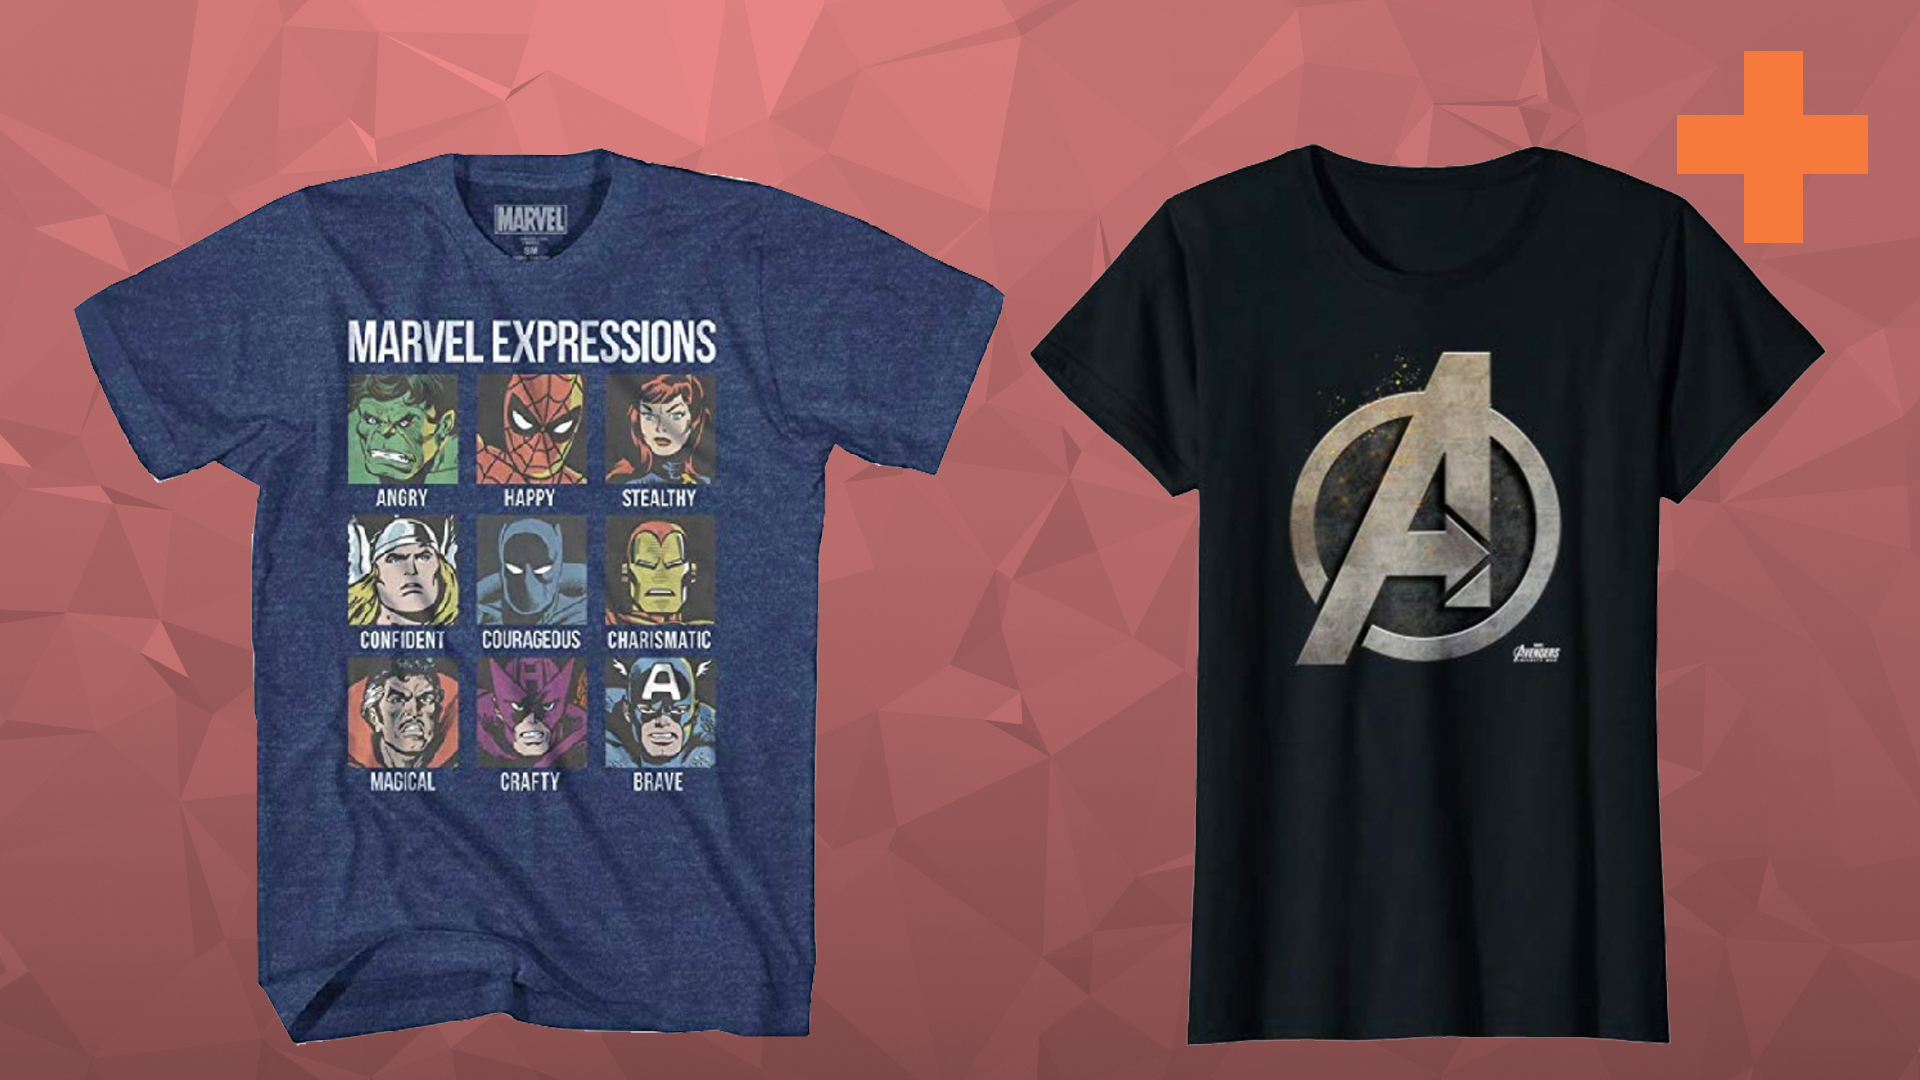 Marvel Girls Avengers Endgame Black Widow Team Suit T-Shirt